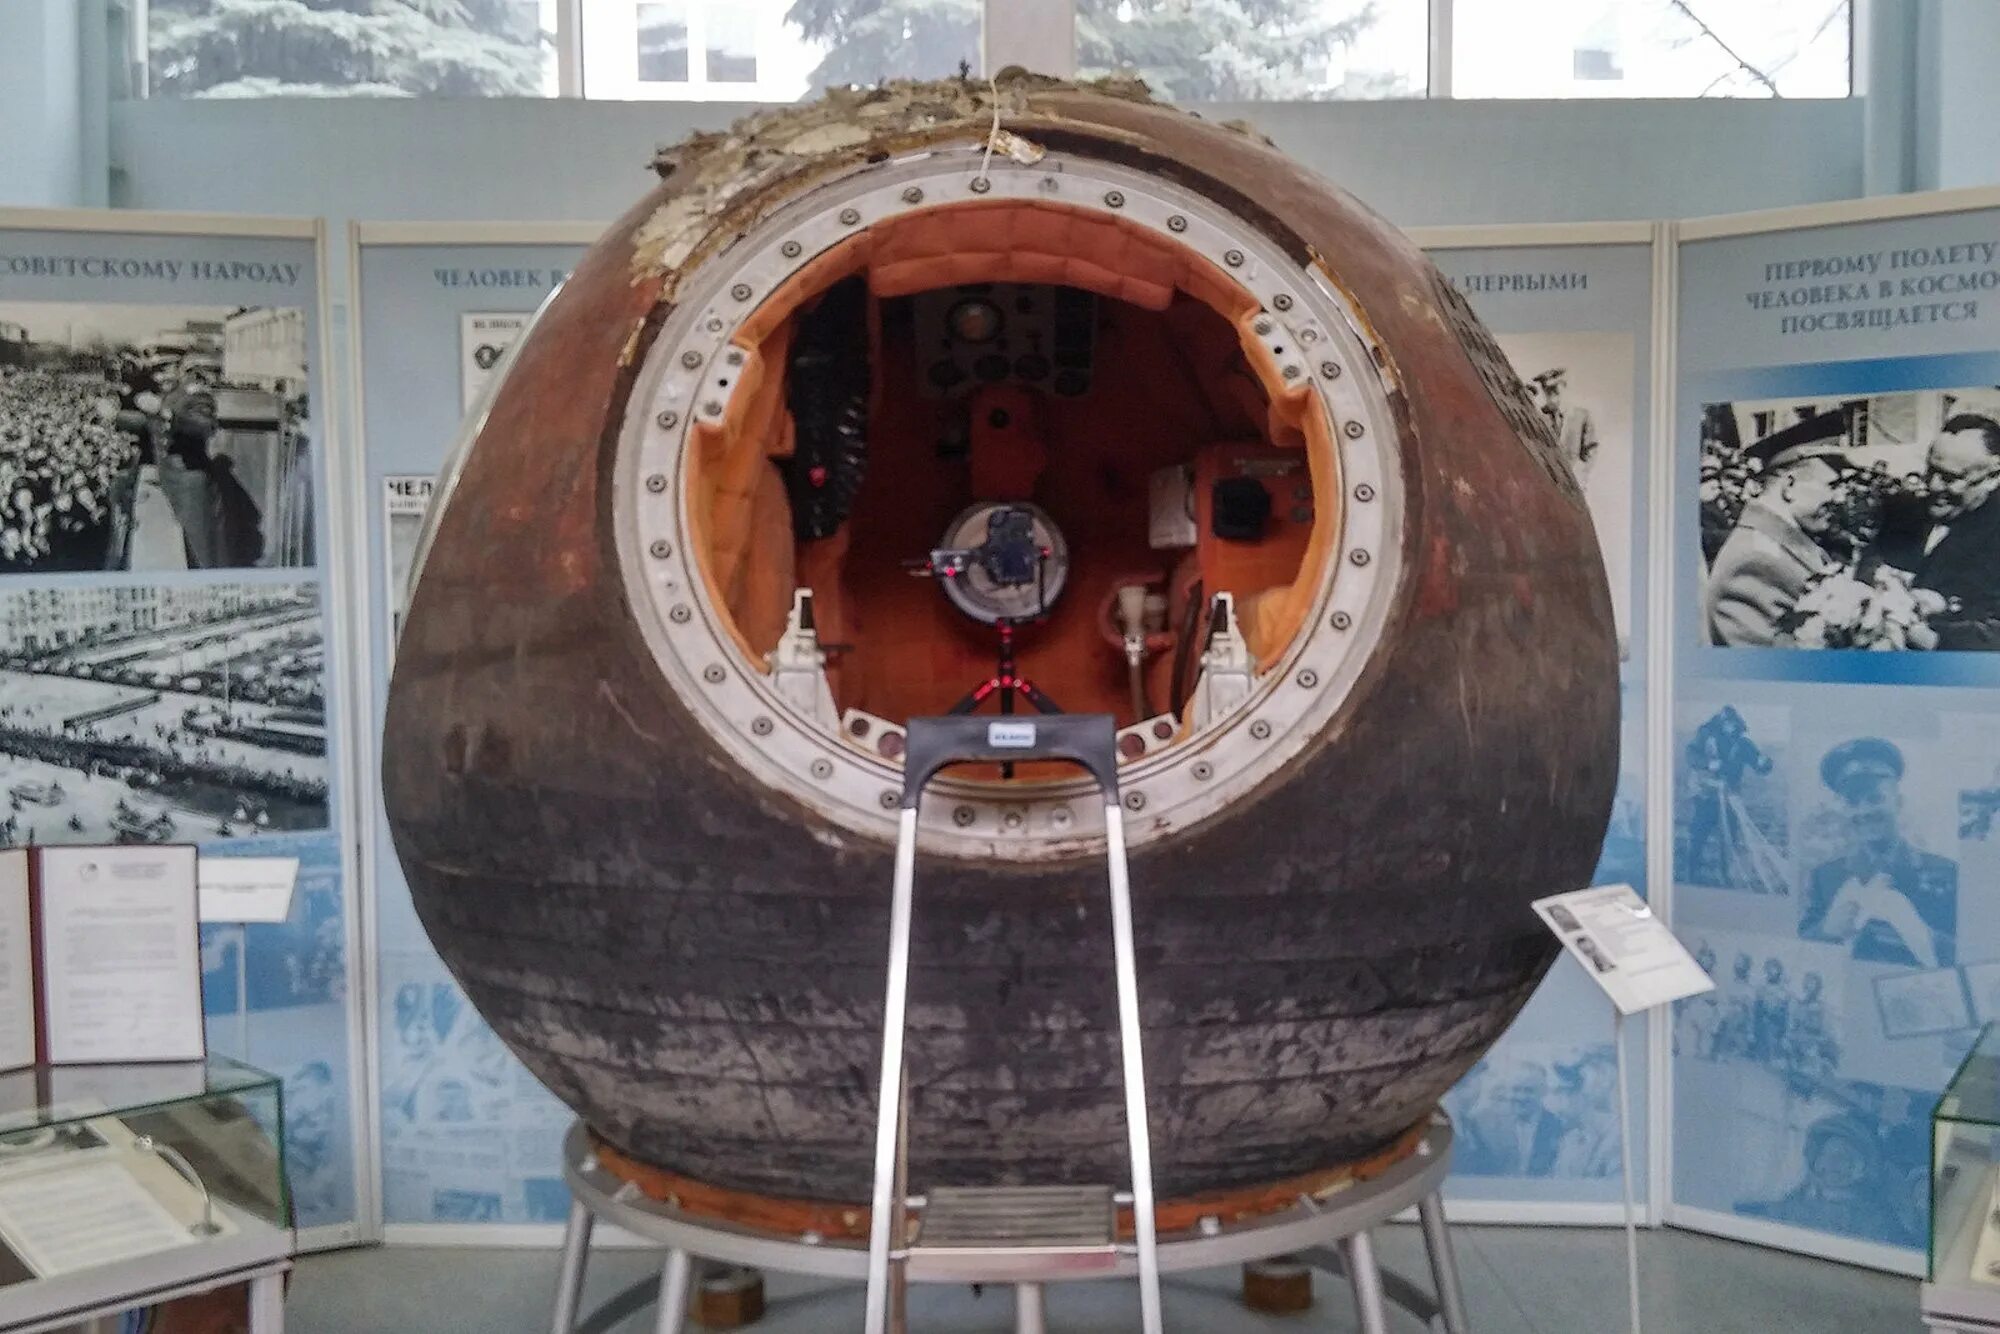 Первый космический аппарат поднявший человека. Космический аппарат Гагарина Восток-1. Космический корабль Восток 1 Юрия Гагарина. Гагарин спускаемый аппарат Восток 1. Спускаемый аппарат корабля «Восток-1».